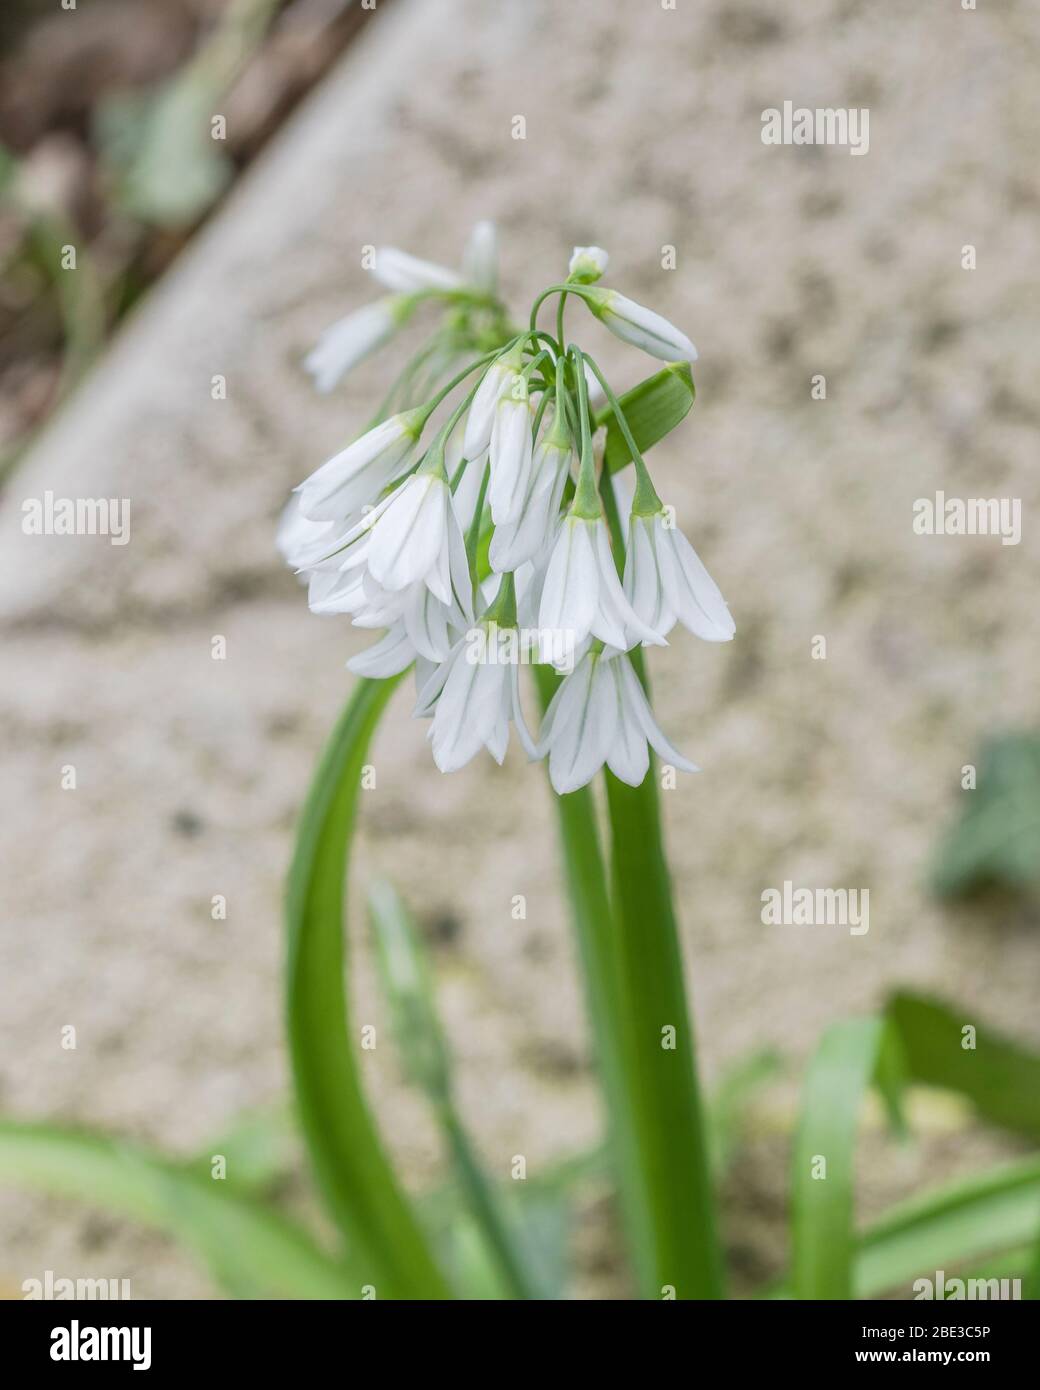 Vicino colpo di fiori bianchi di Leek / Allium triquetrum a tre cornici, un membro selvaggio della famiglia delle cipolle che può essere utilizzato un cibo foraggiato e mangiato. Foto Stock